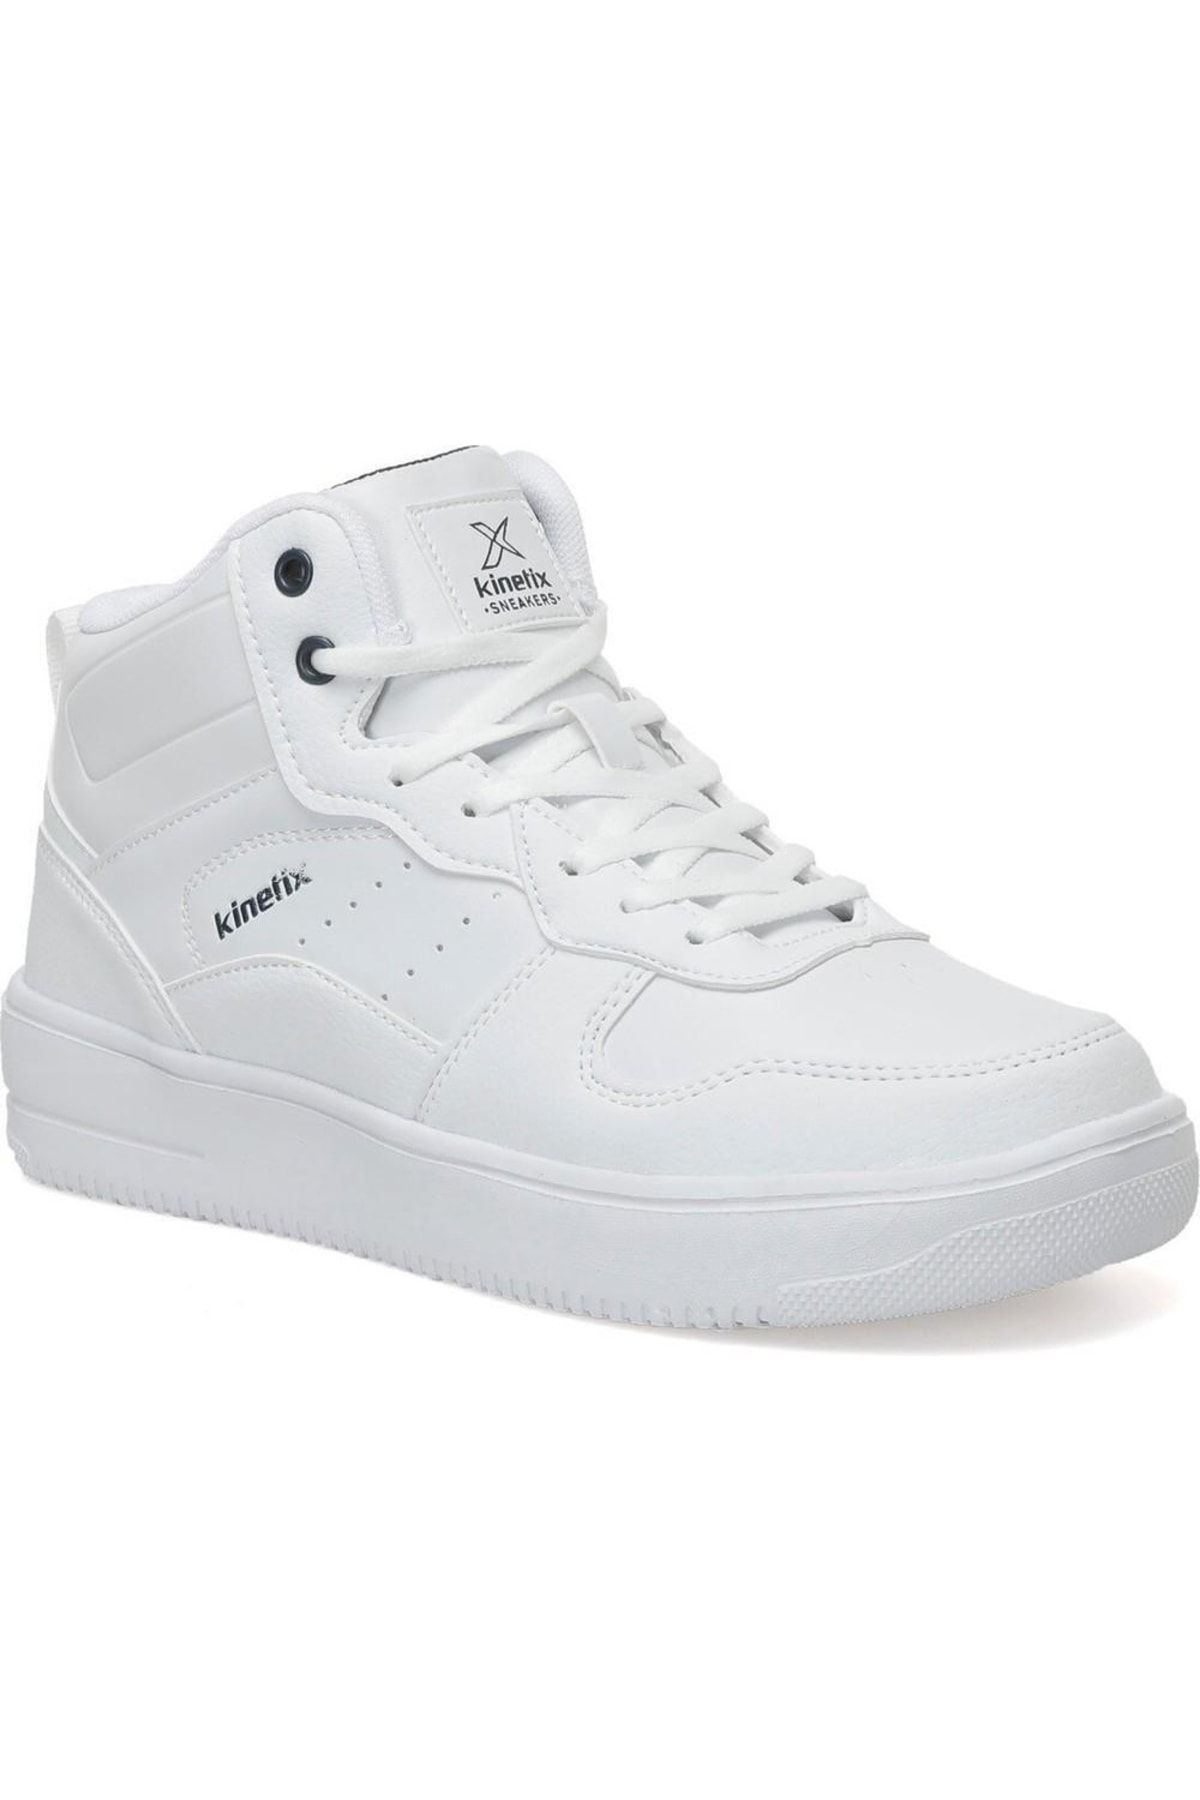 Kinetix Tyra Pu Hı 2pr Beyaz Erkek Bilekli Sneaker